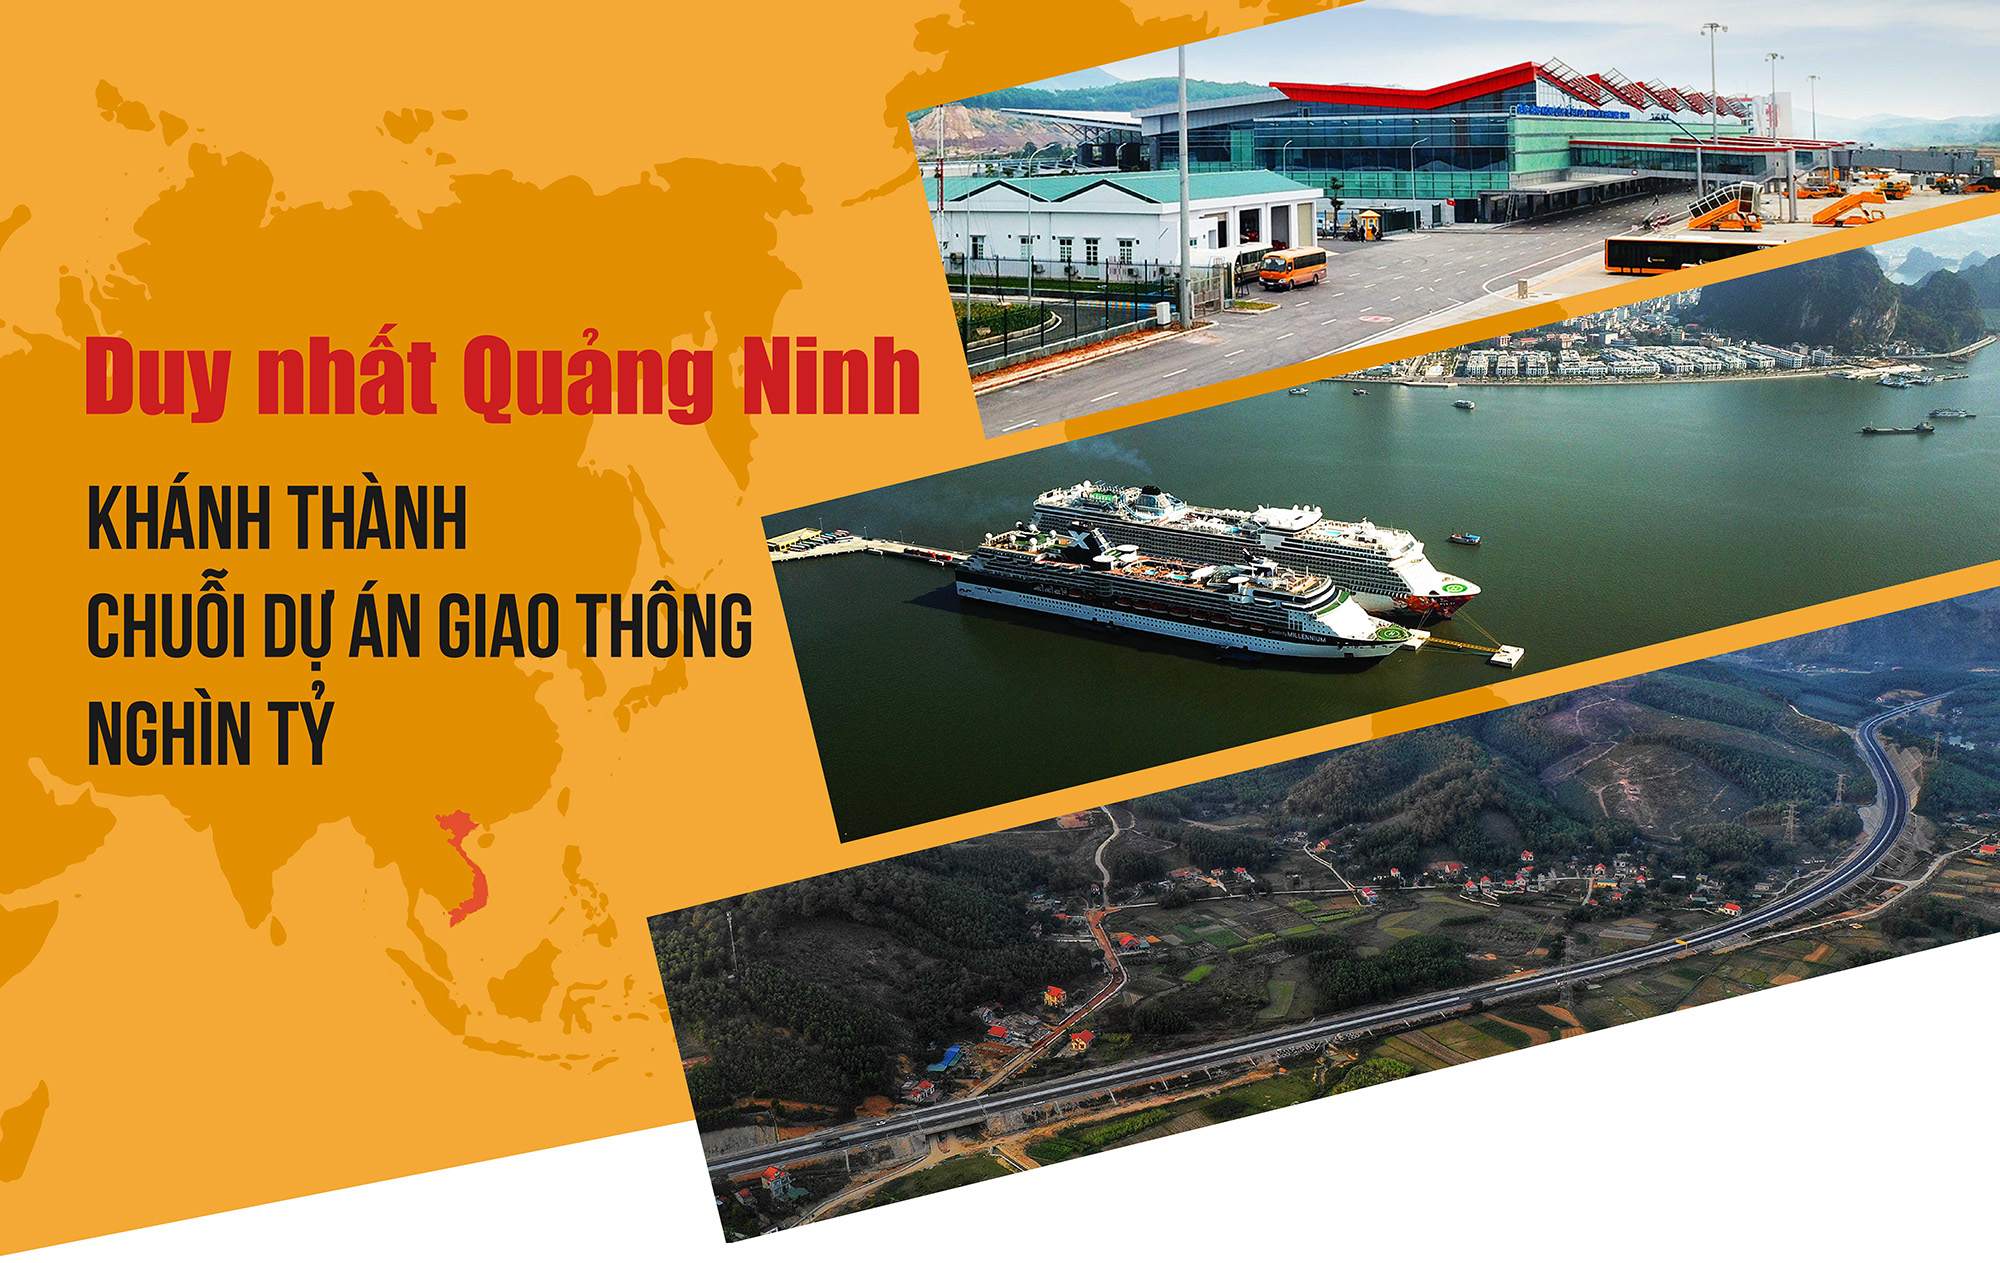 Ngày 30/12, tại Vân Đồn, tỉnh Quảng Ninh đã tổ chức khai trương, thông tuyến 3 công trình hạ tầng giao thông trọng điểm, mang tầm cỡ quốc tế là Cảng hàng không quốc tế Vân Đồn, Cảng tàu khách quốc tế Hạ Long và cao tốc Hạ Long - Vân Đồn với tổng mức đầu tư trên 20.000 tỷ đồng.